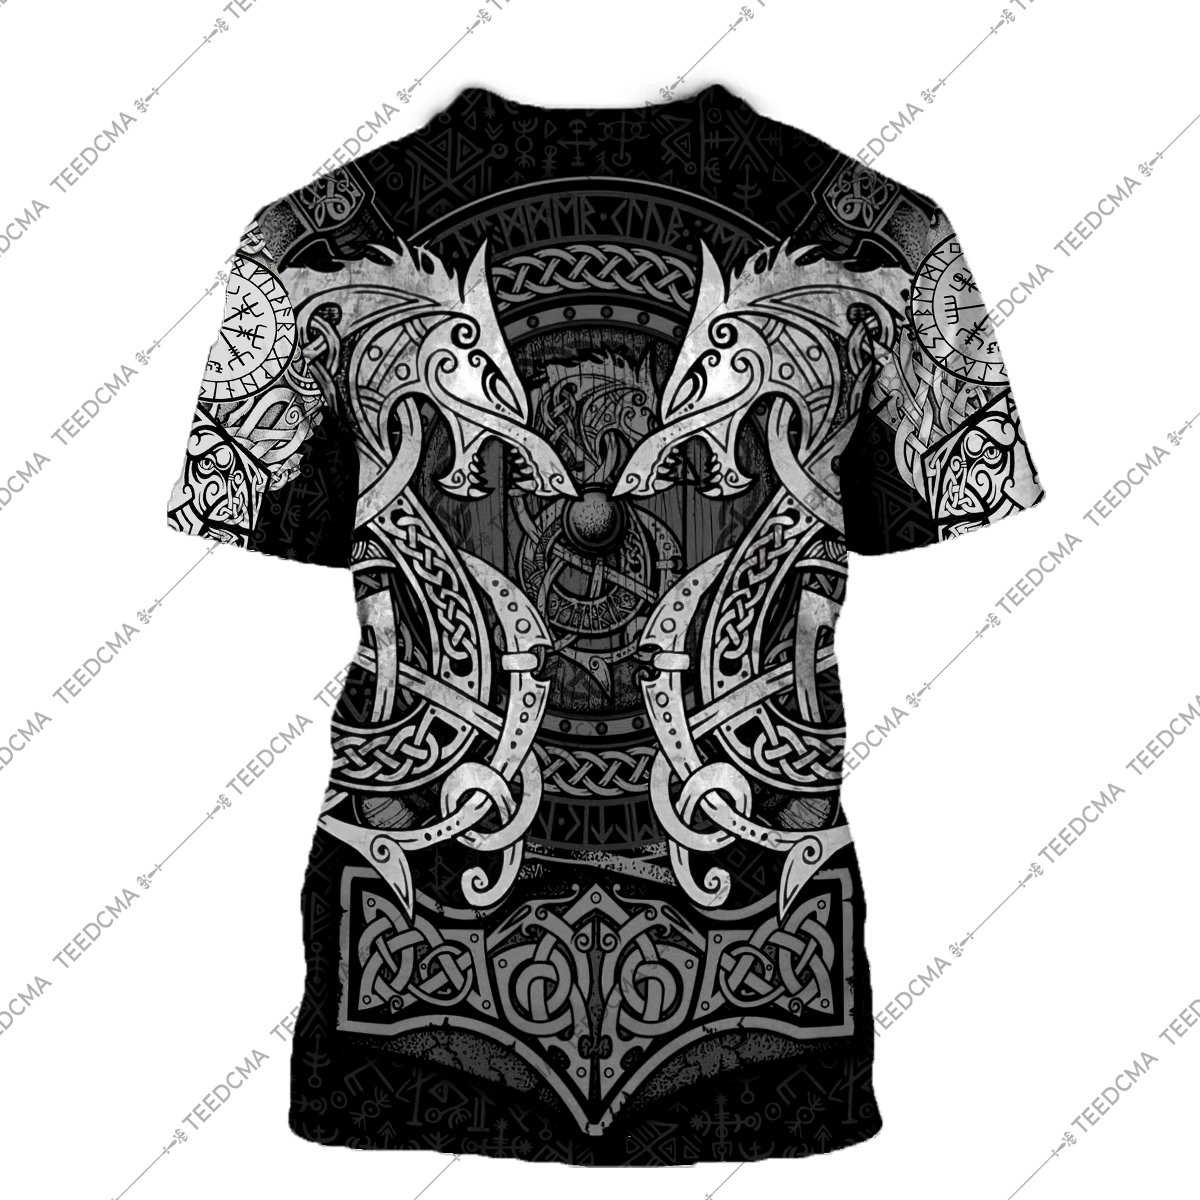 fenrir viking tattoo style all over printed tshirt - back